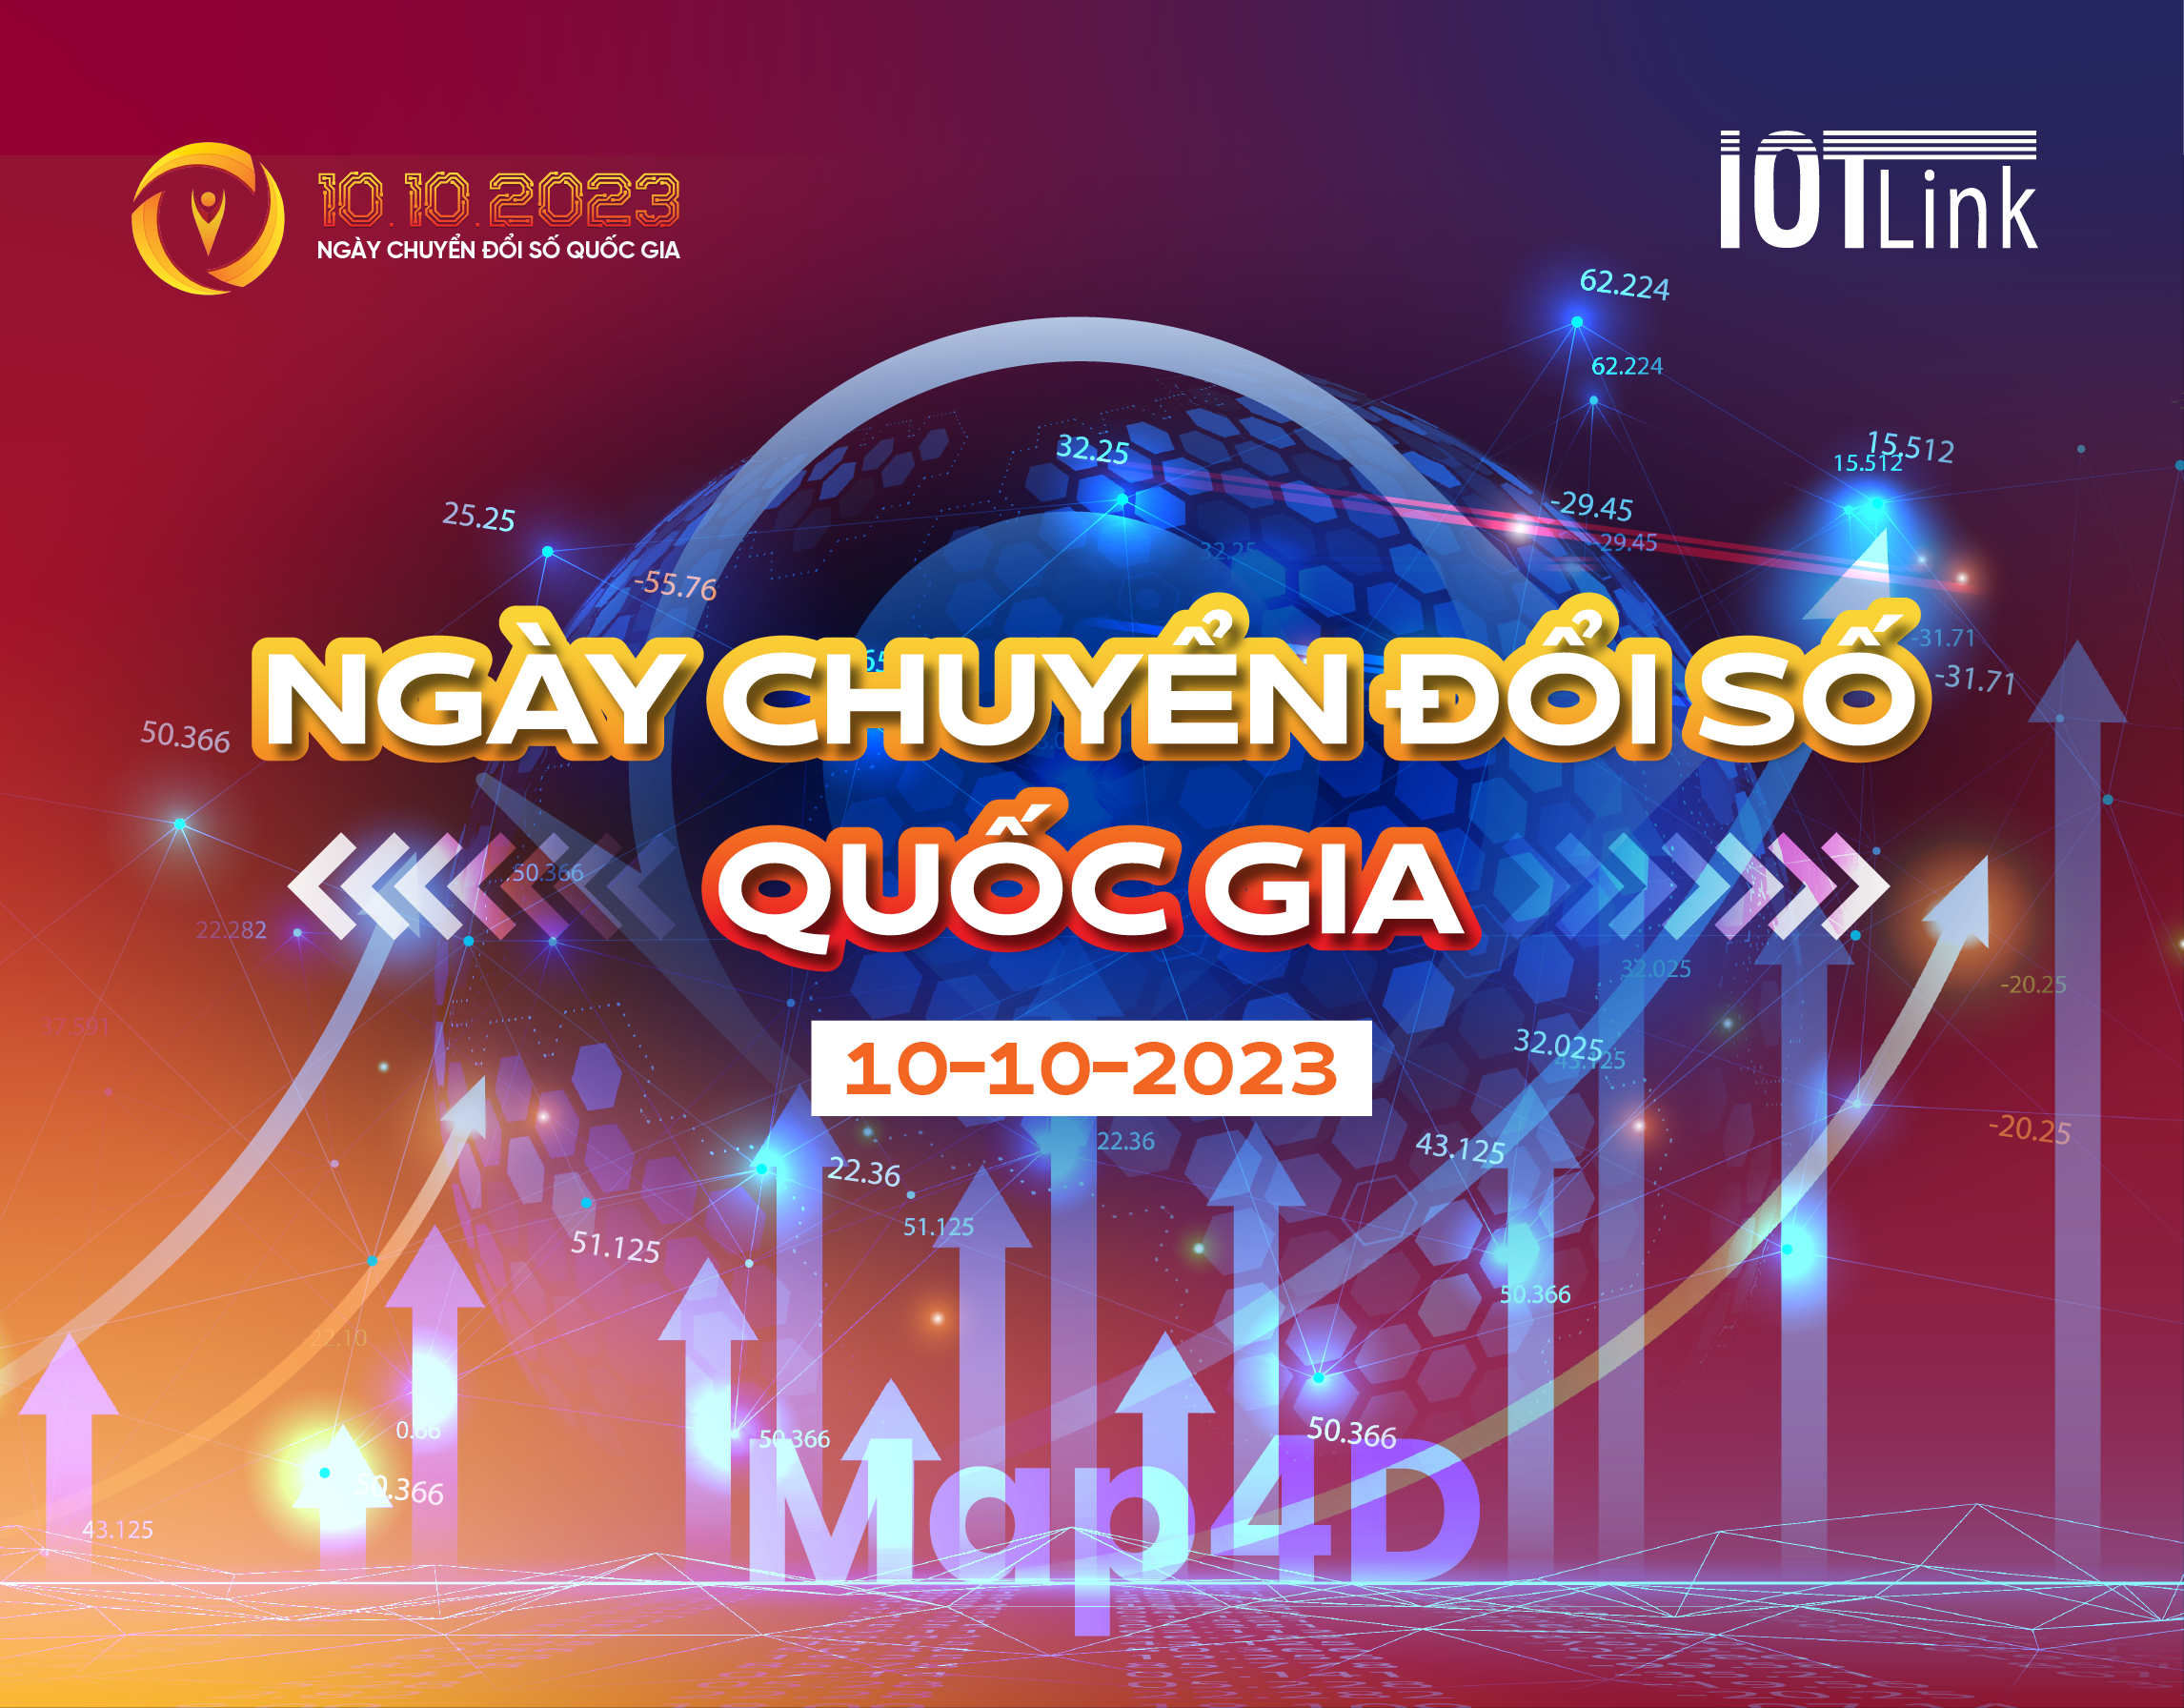 Ngày chuyển đổi số Việt Nam 10-10-2023